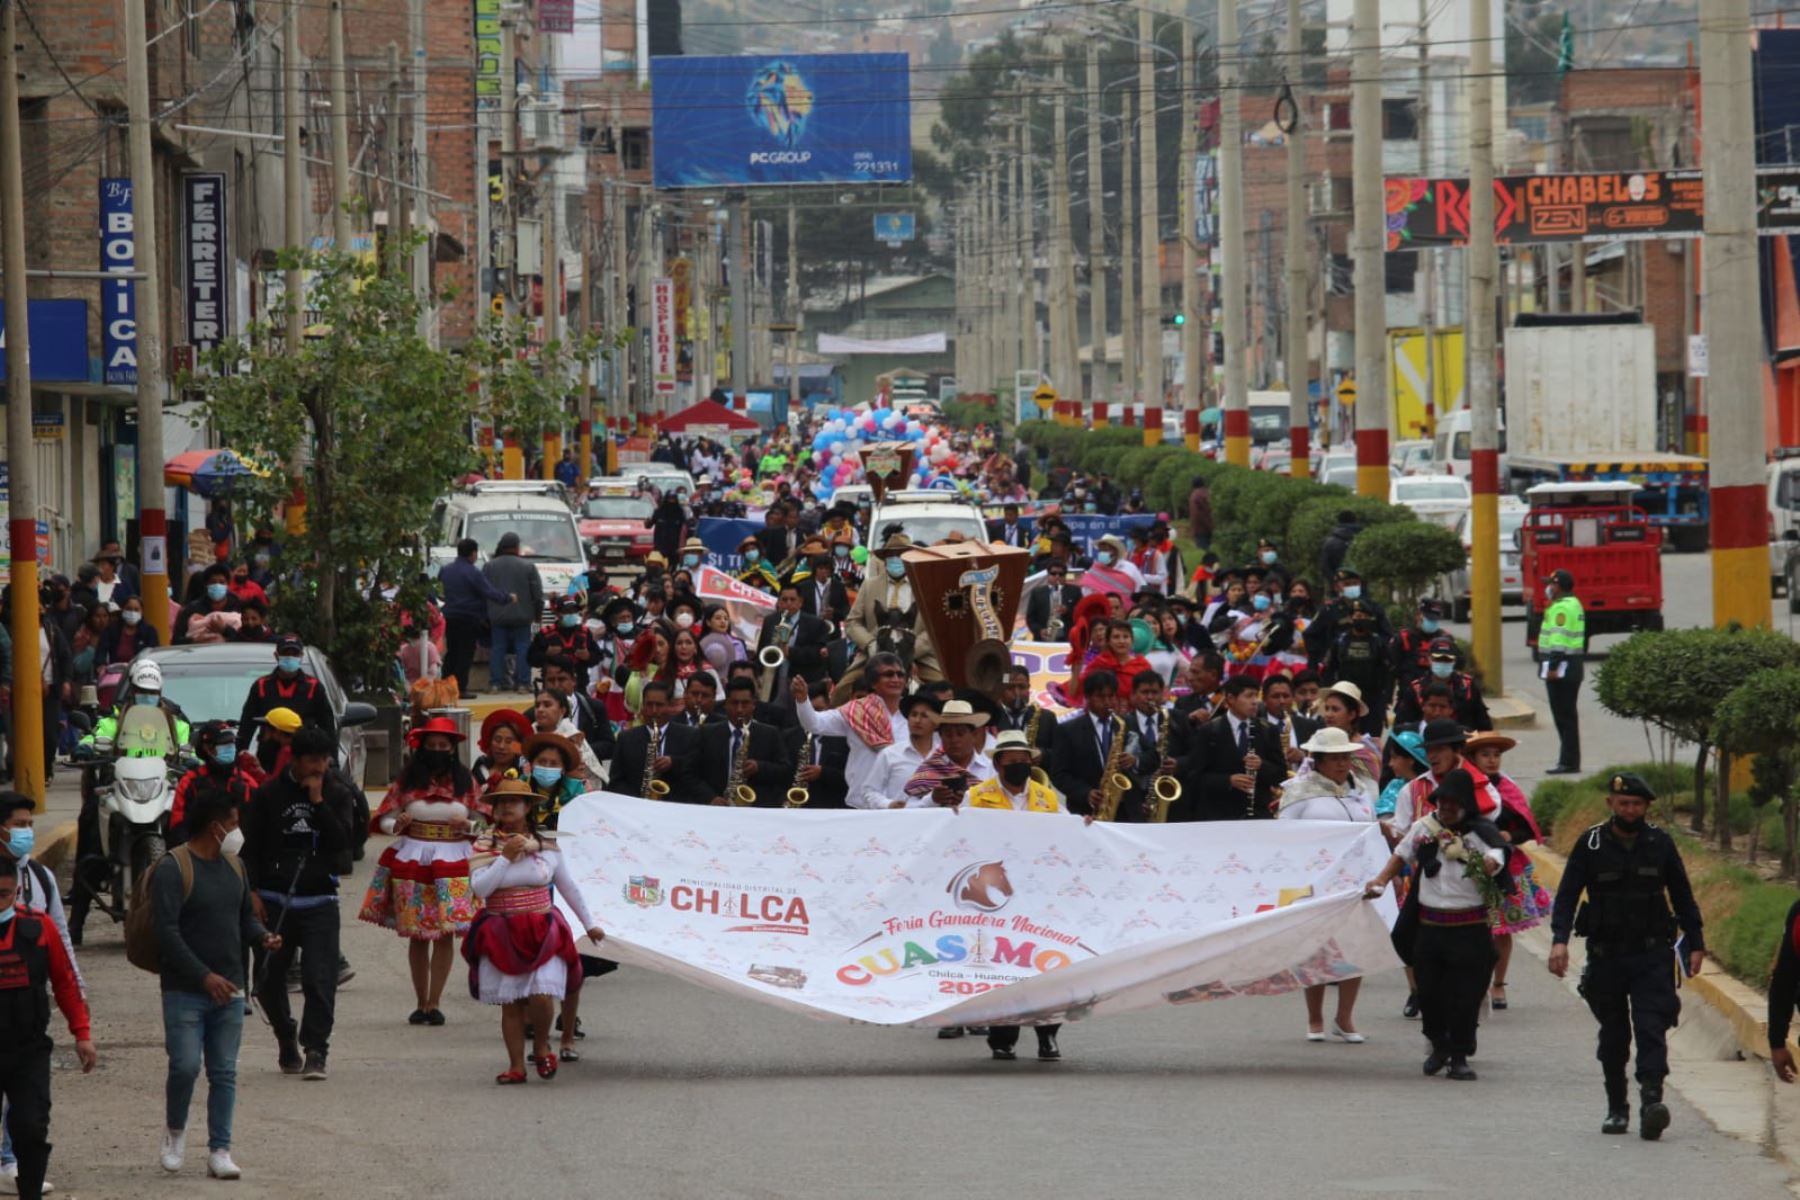 La Feria Ganadera Nacional Cuasimodo 2022 tiene como escenario el campo ferial de Coto Coto, en la provincia de Huancayo.